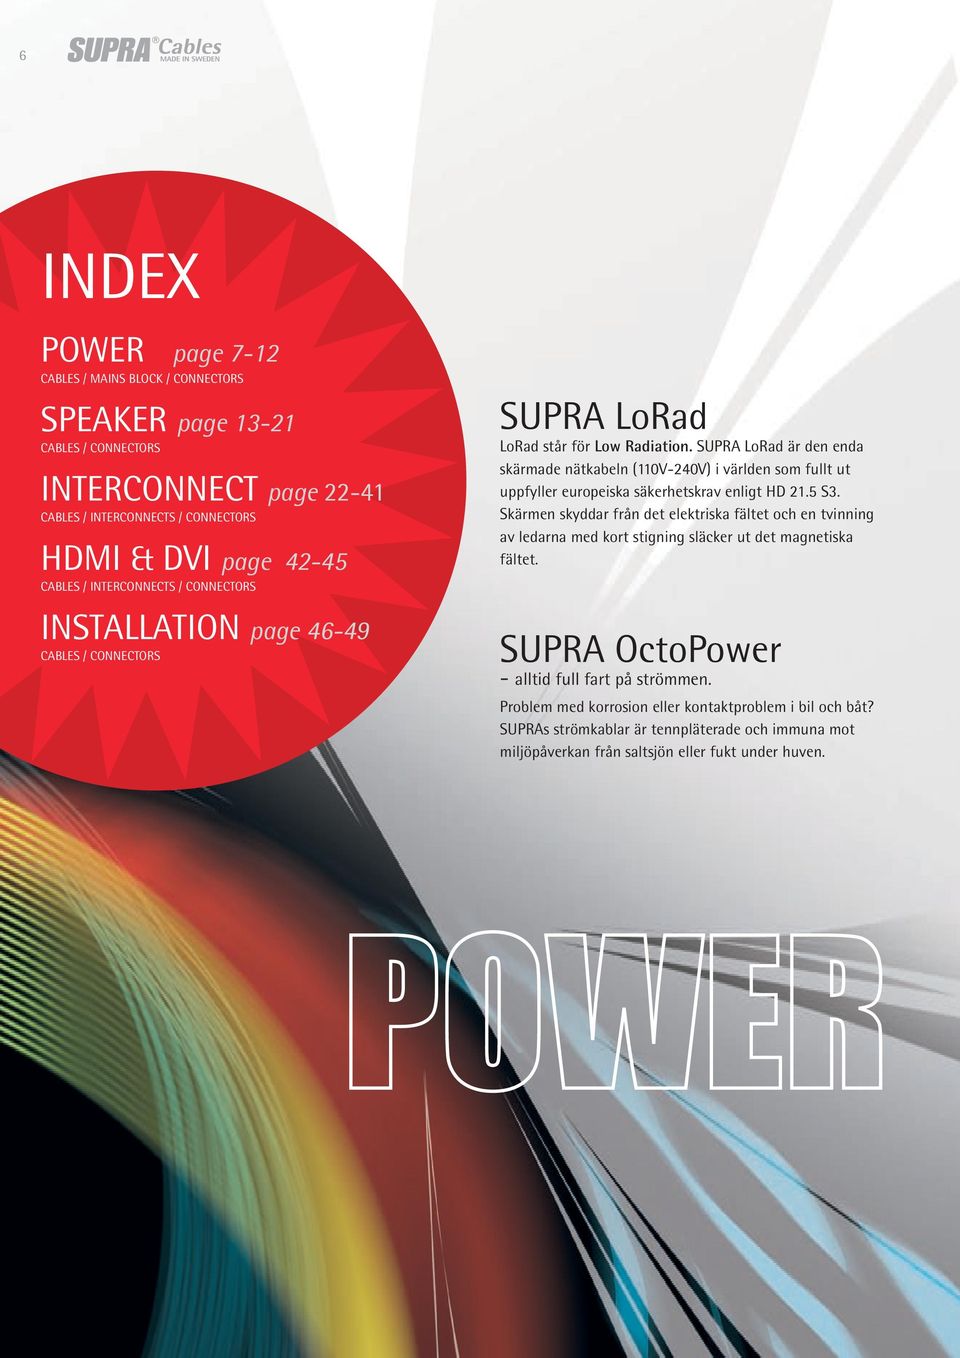 SUPRA LoRad är den enda skärmade nätkabeln (110V-240V) i världen som fullt ut uppfyller europeiska säkerhetskrav enligt HD 21.5 S3.